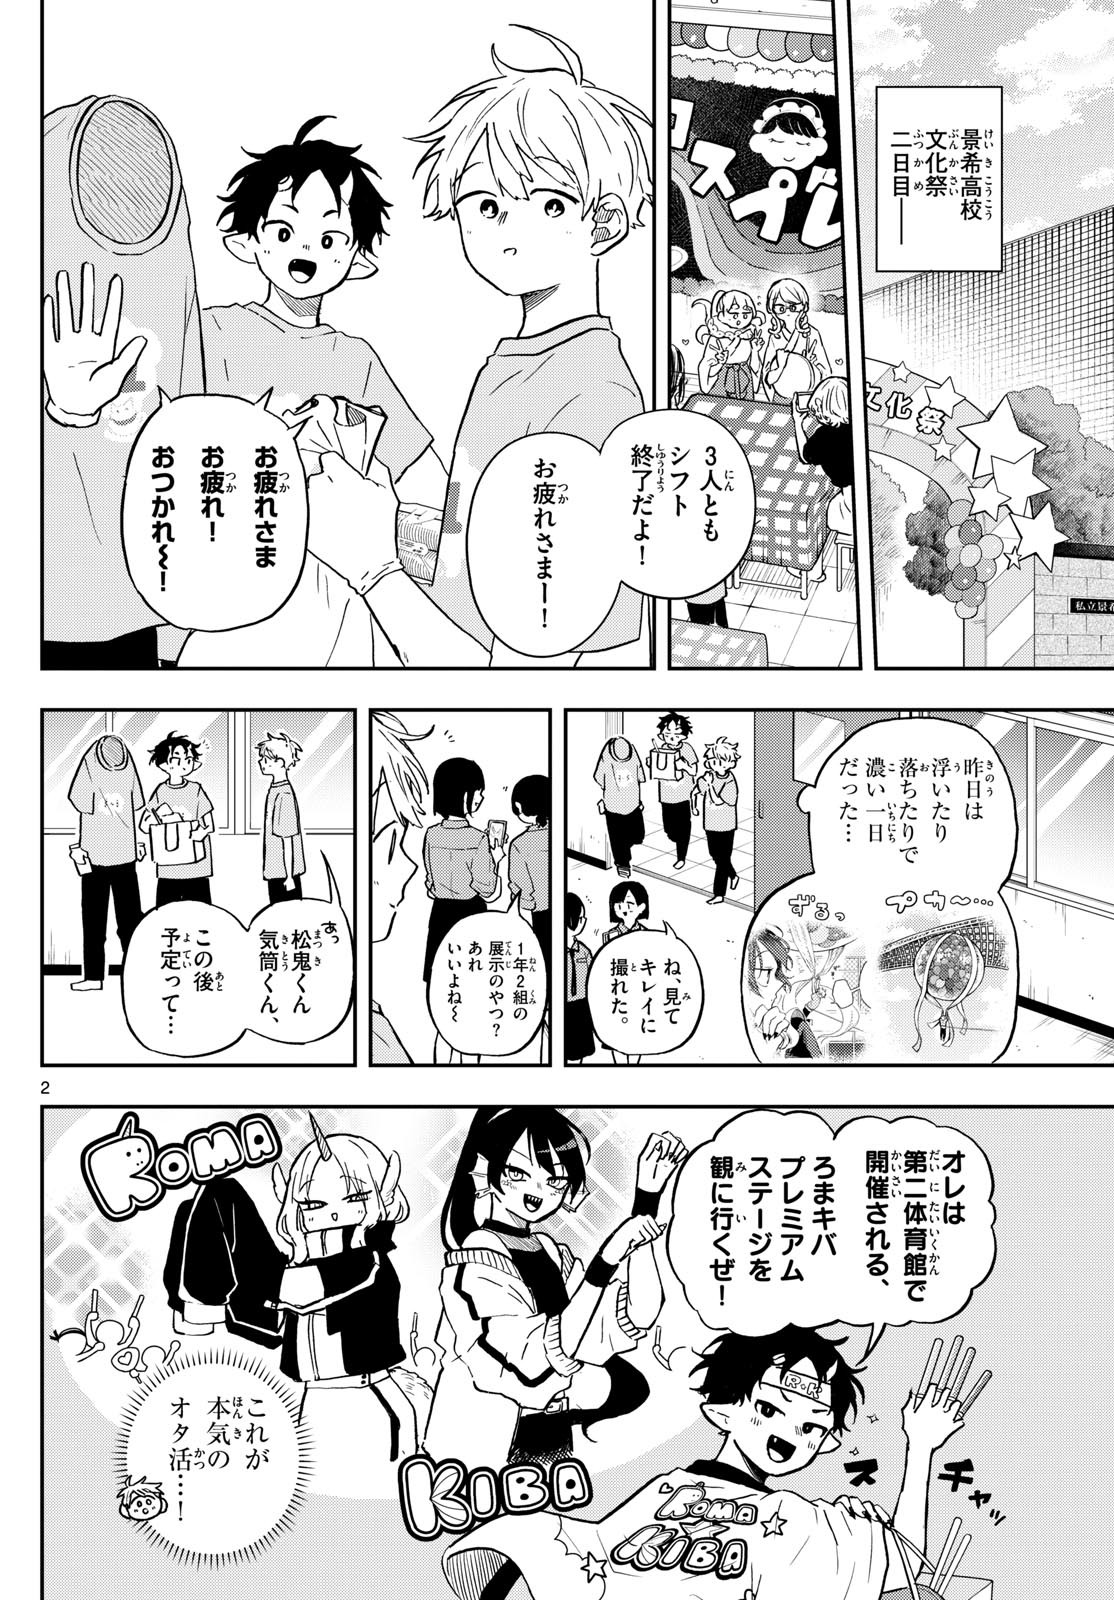 Omori Tsumiki to Kinichijou. - Chapter 33 - Page 2